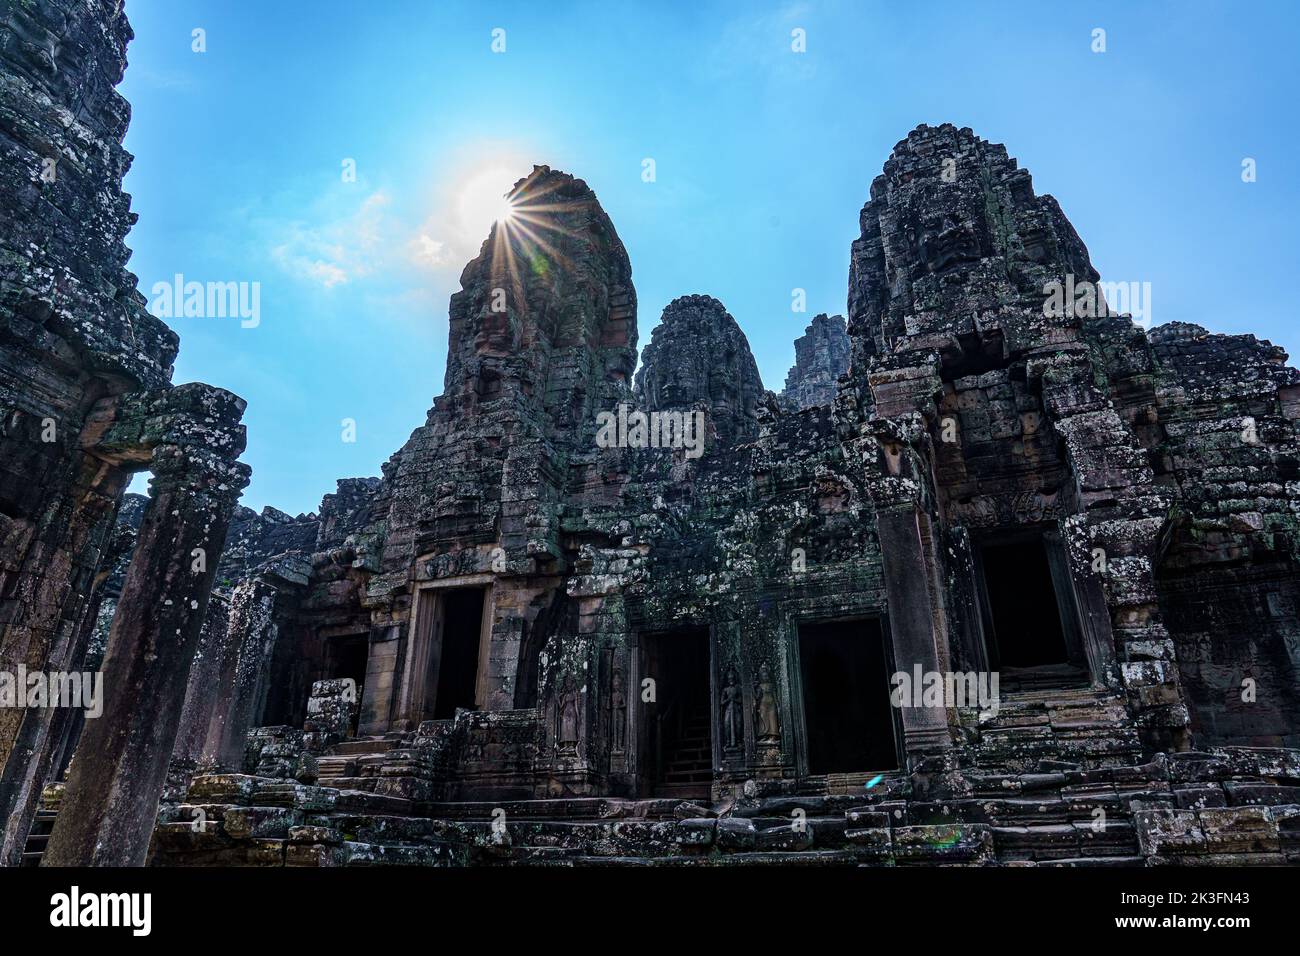 Cambodge. Siem Reap. Le parc archéologique d'Angkor. Le temple de Bayon temple hindou du 12th siècle Banque D'Images